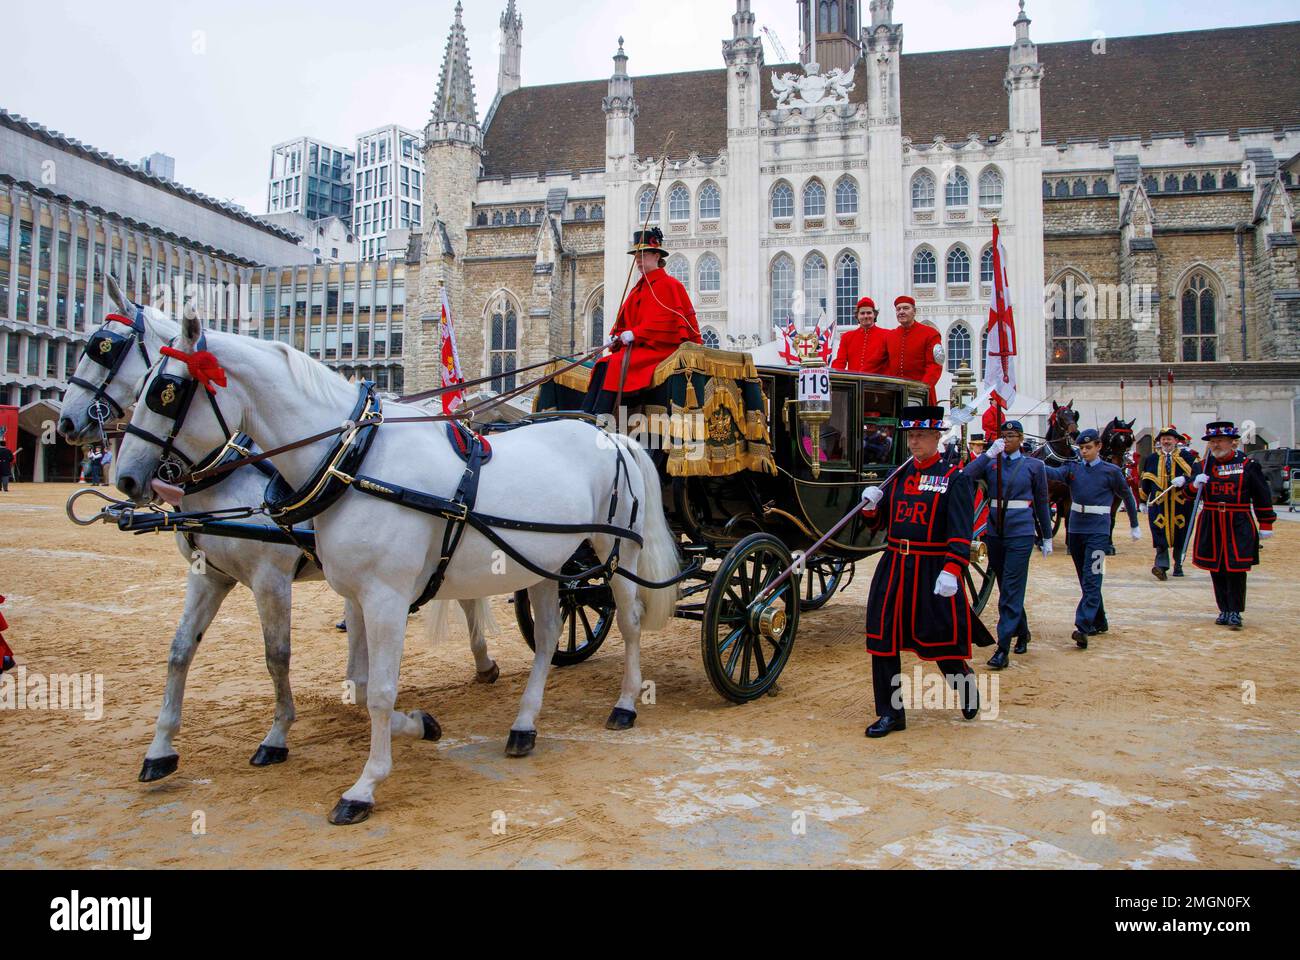 Eine Kutsche im Guildhall, mit Yeomen, die zur 694. Show neben uns marschiert. Die Lord-Mayors-Show in London mit Pferden und Pracht. Stockfoto